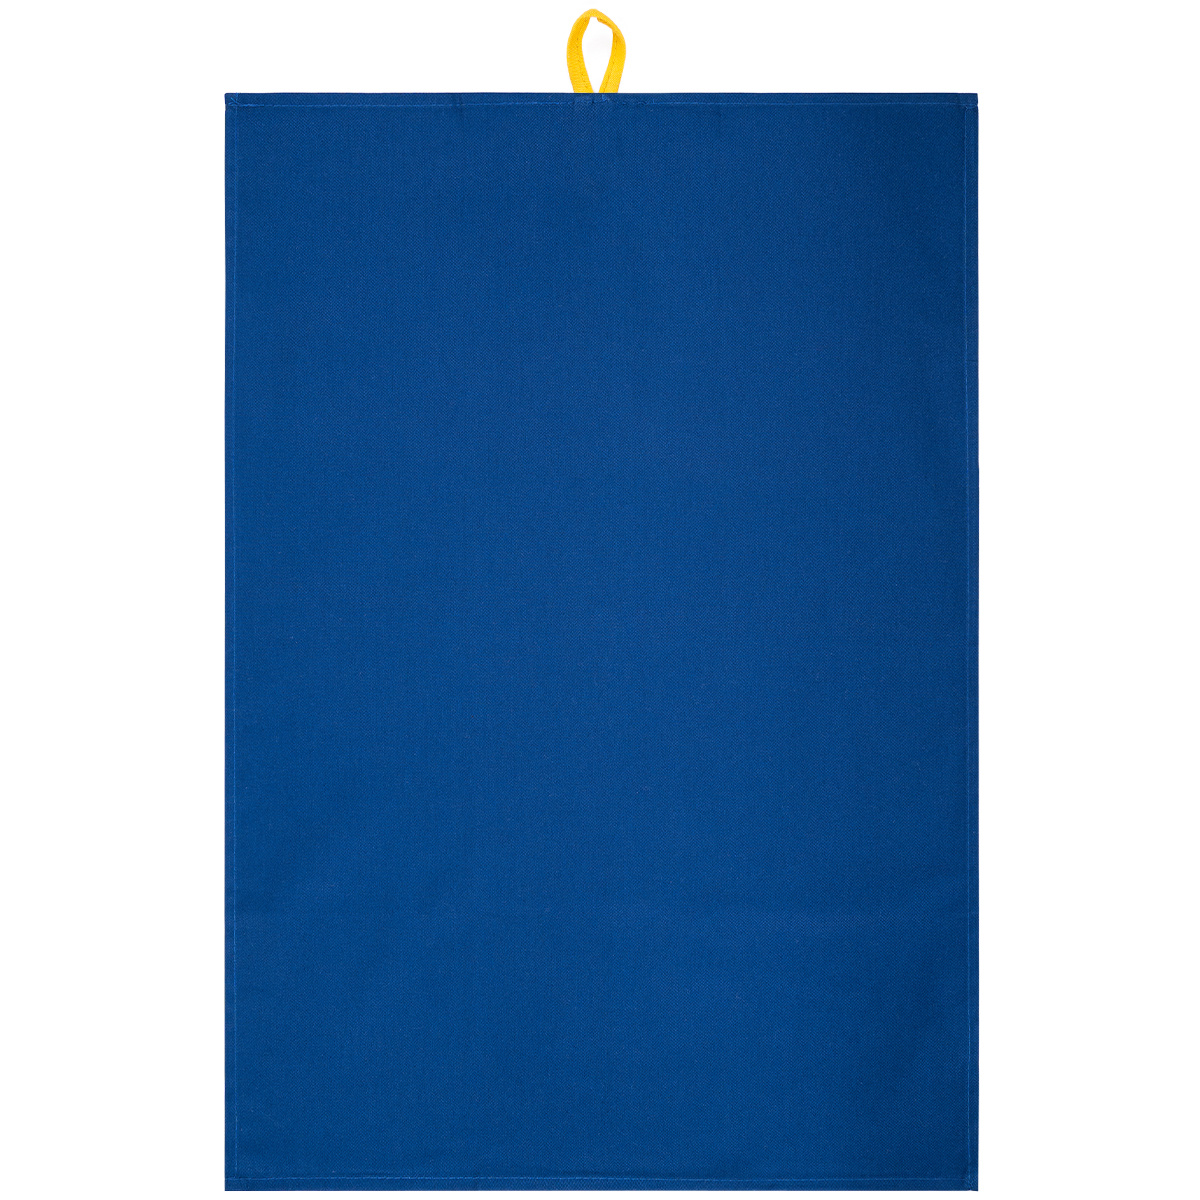 Șervet bucătărie Compact albastru, 45 x 65 cm Albastru